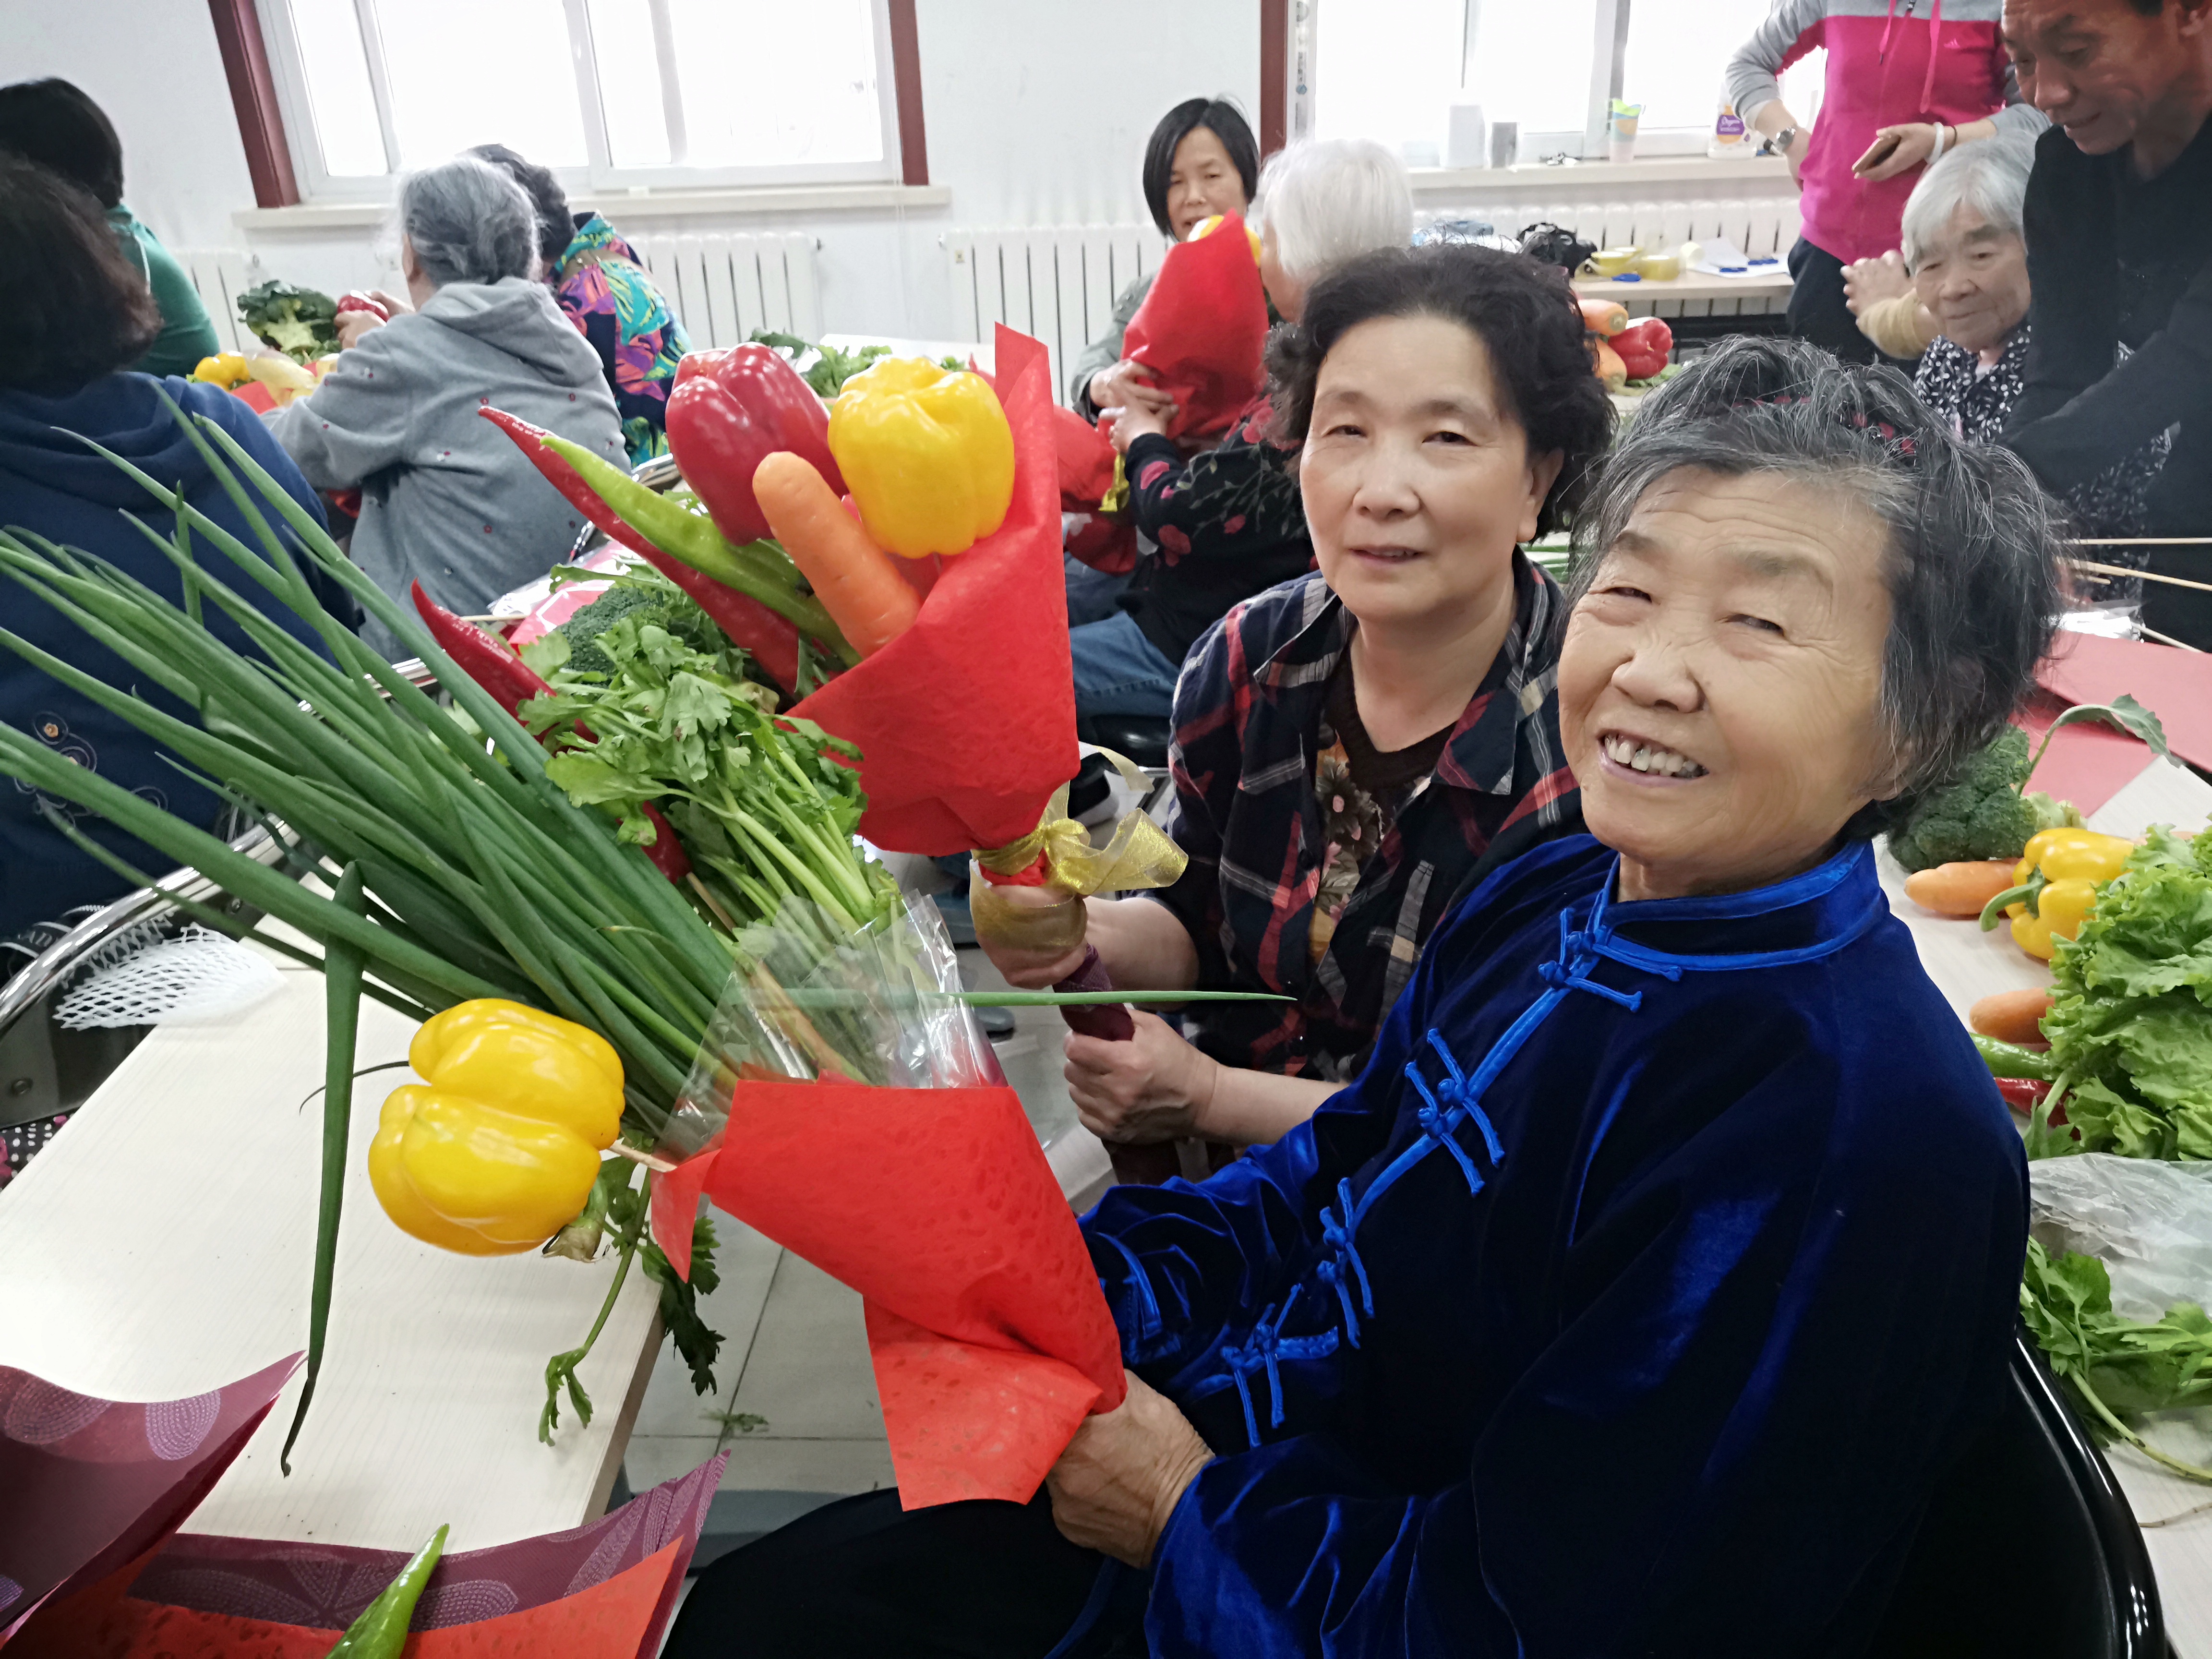 迎母亲节北京一社区组织妈妈扎蔬菜花束送神秘祝福 国内 新京报网